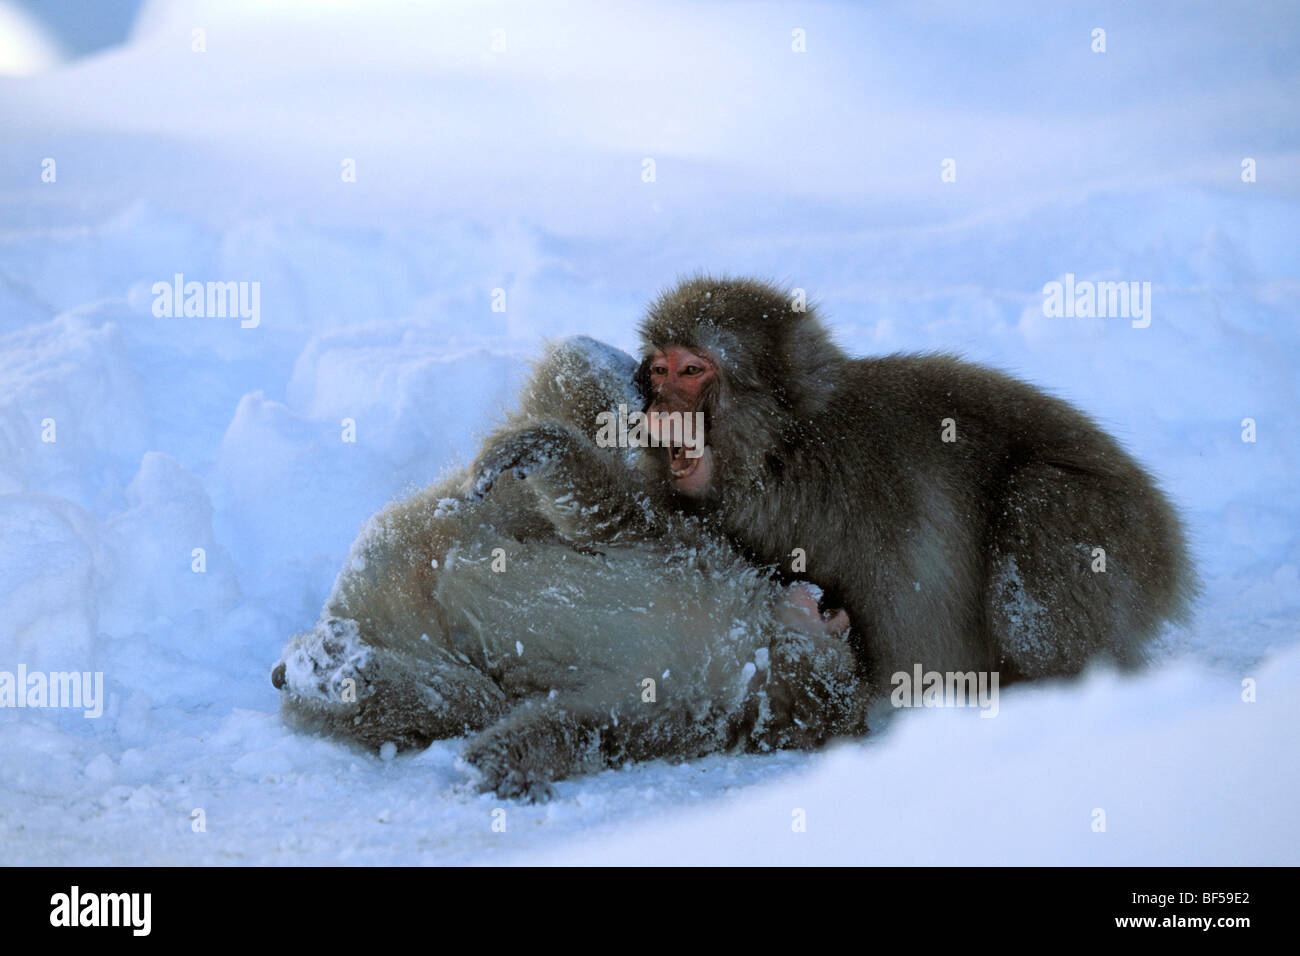 Les jeunes singes neige, macaques japonais (Macaca fuscata) jouent dans la neige, neige, Alpes japonaises, le Japon, l'Asie Banque D'Images